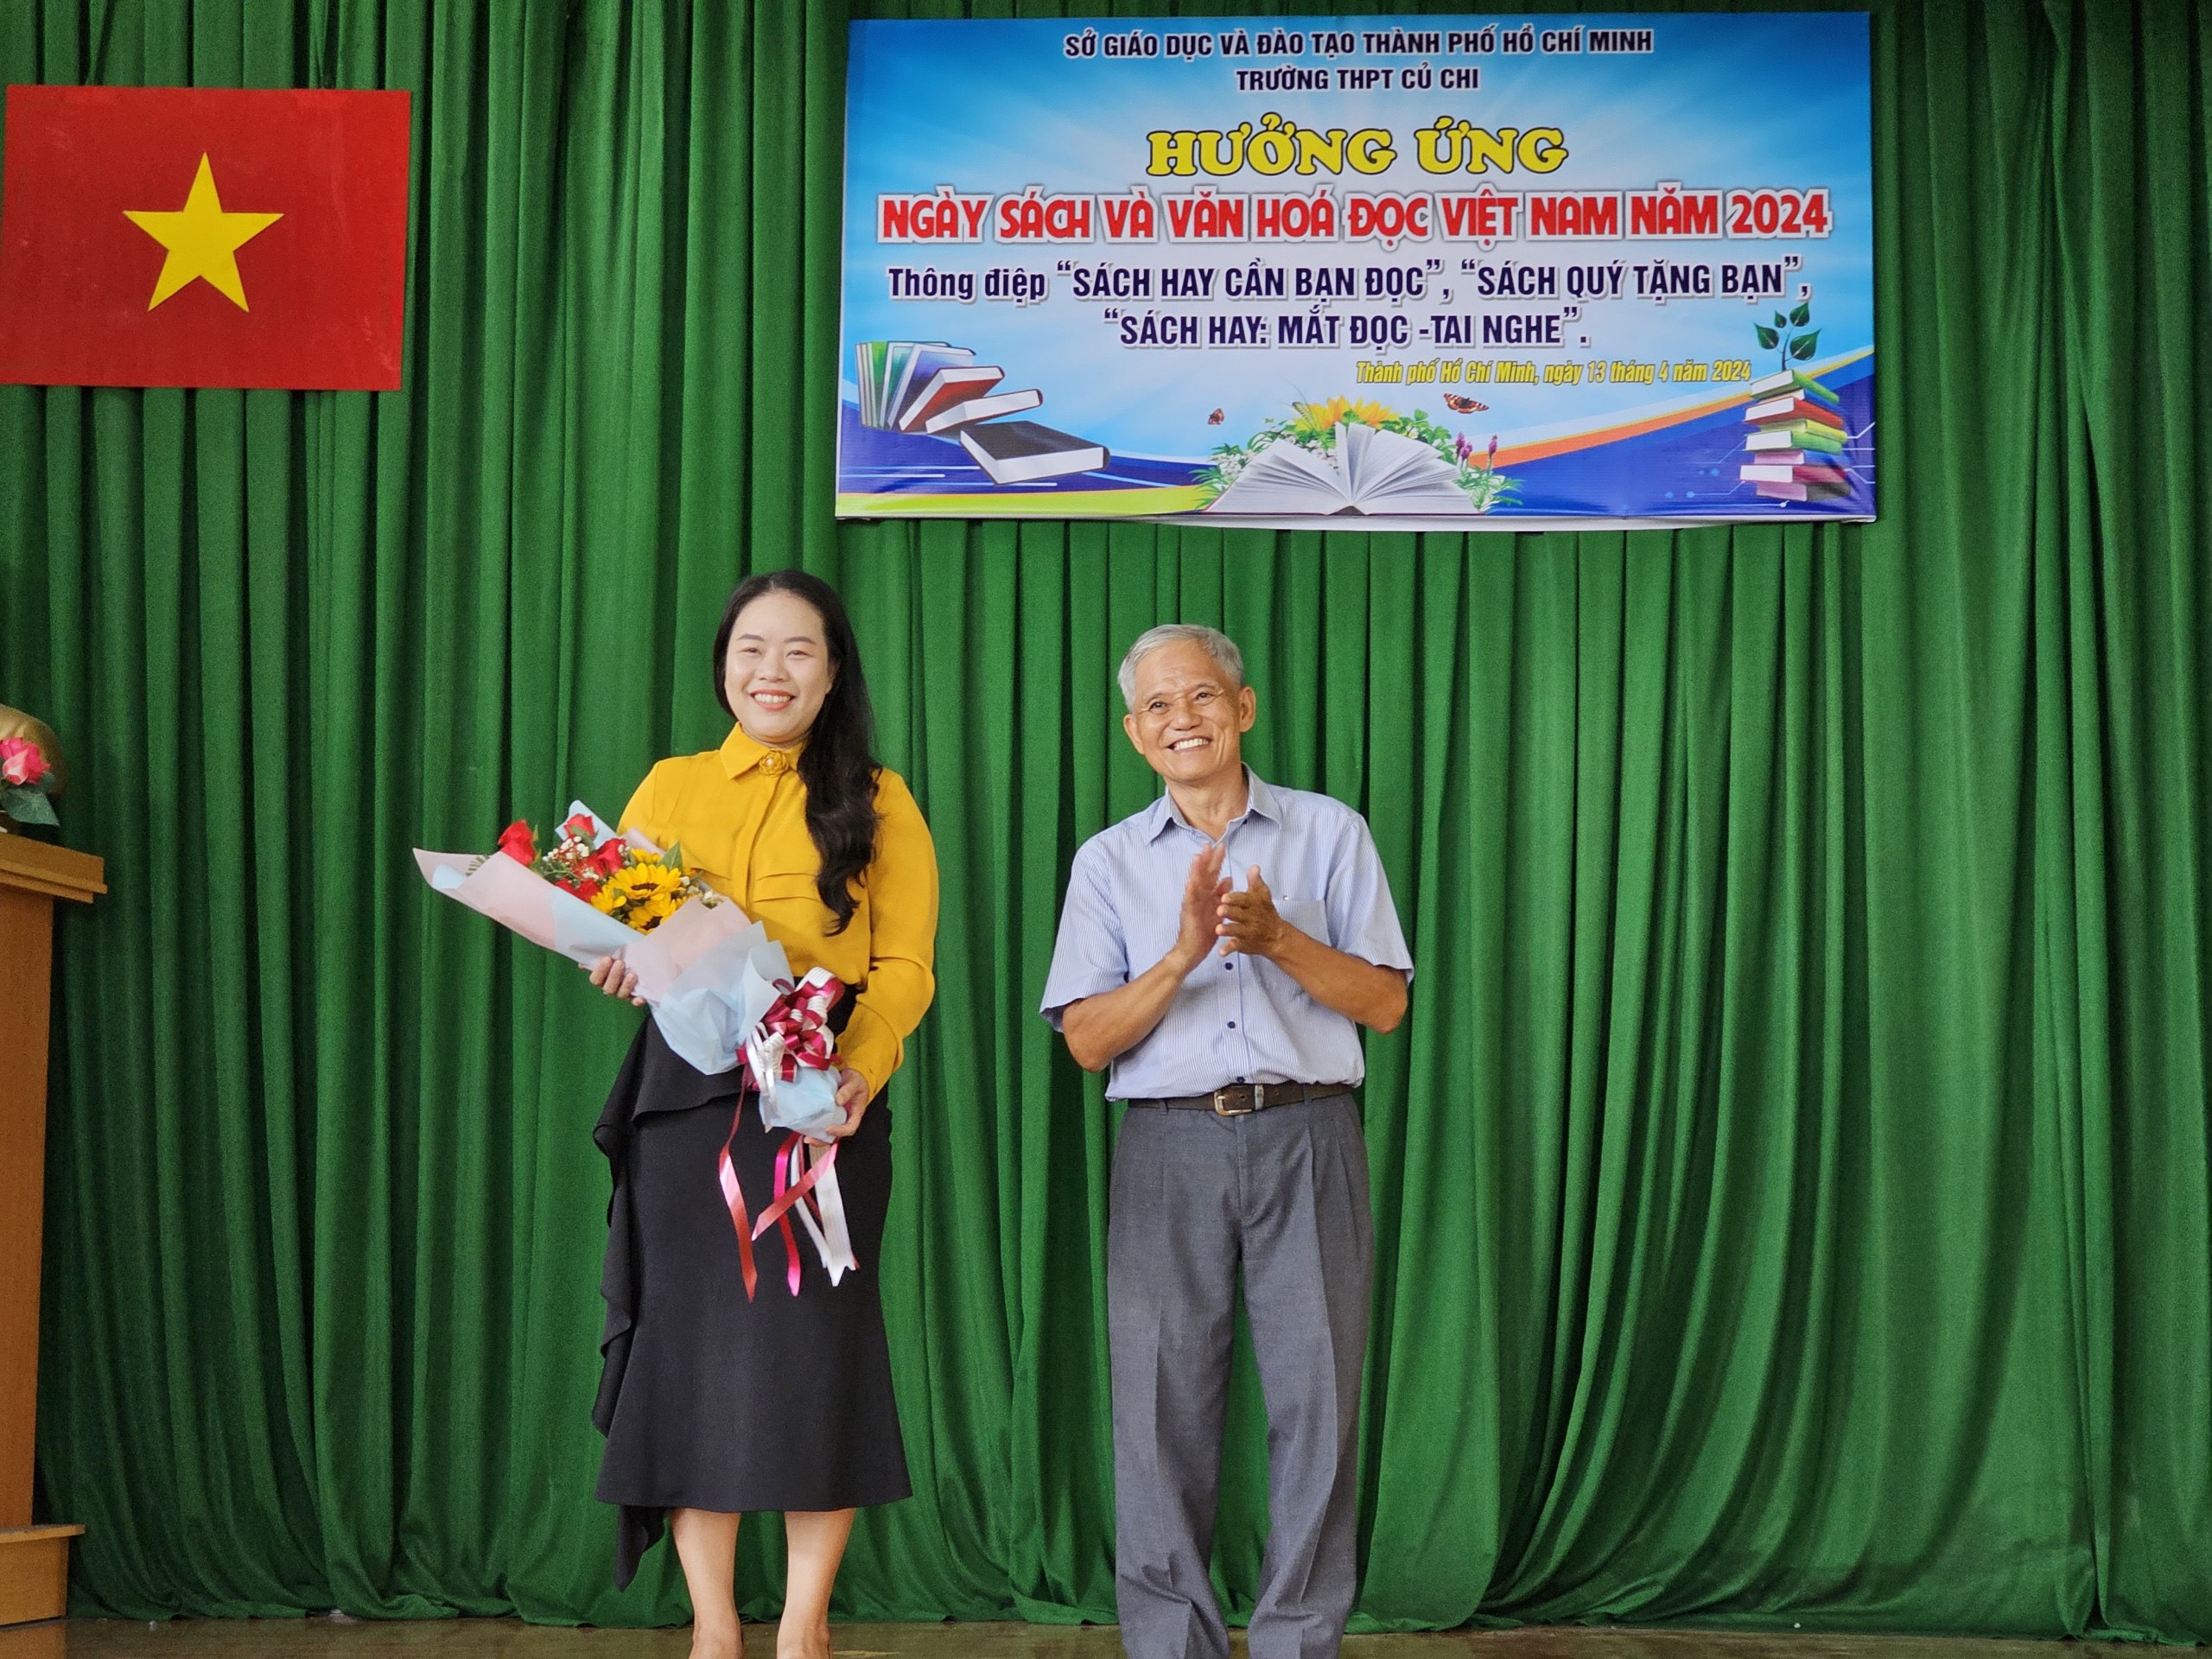 Chị Nguyễn Mộng Tuyền và thầy phó hiệu trưởng trường THPT Củ Chi